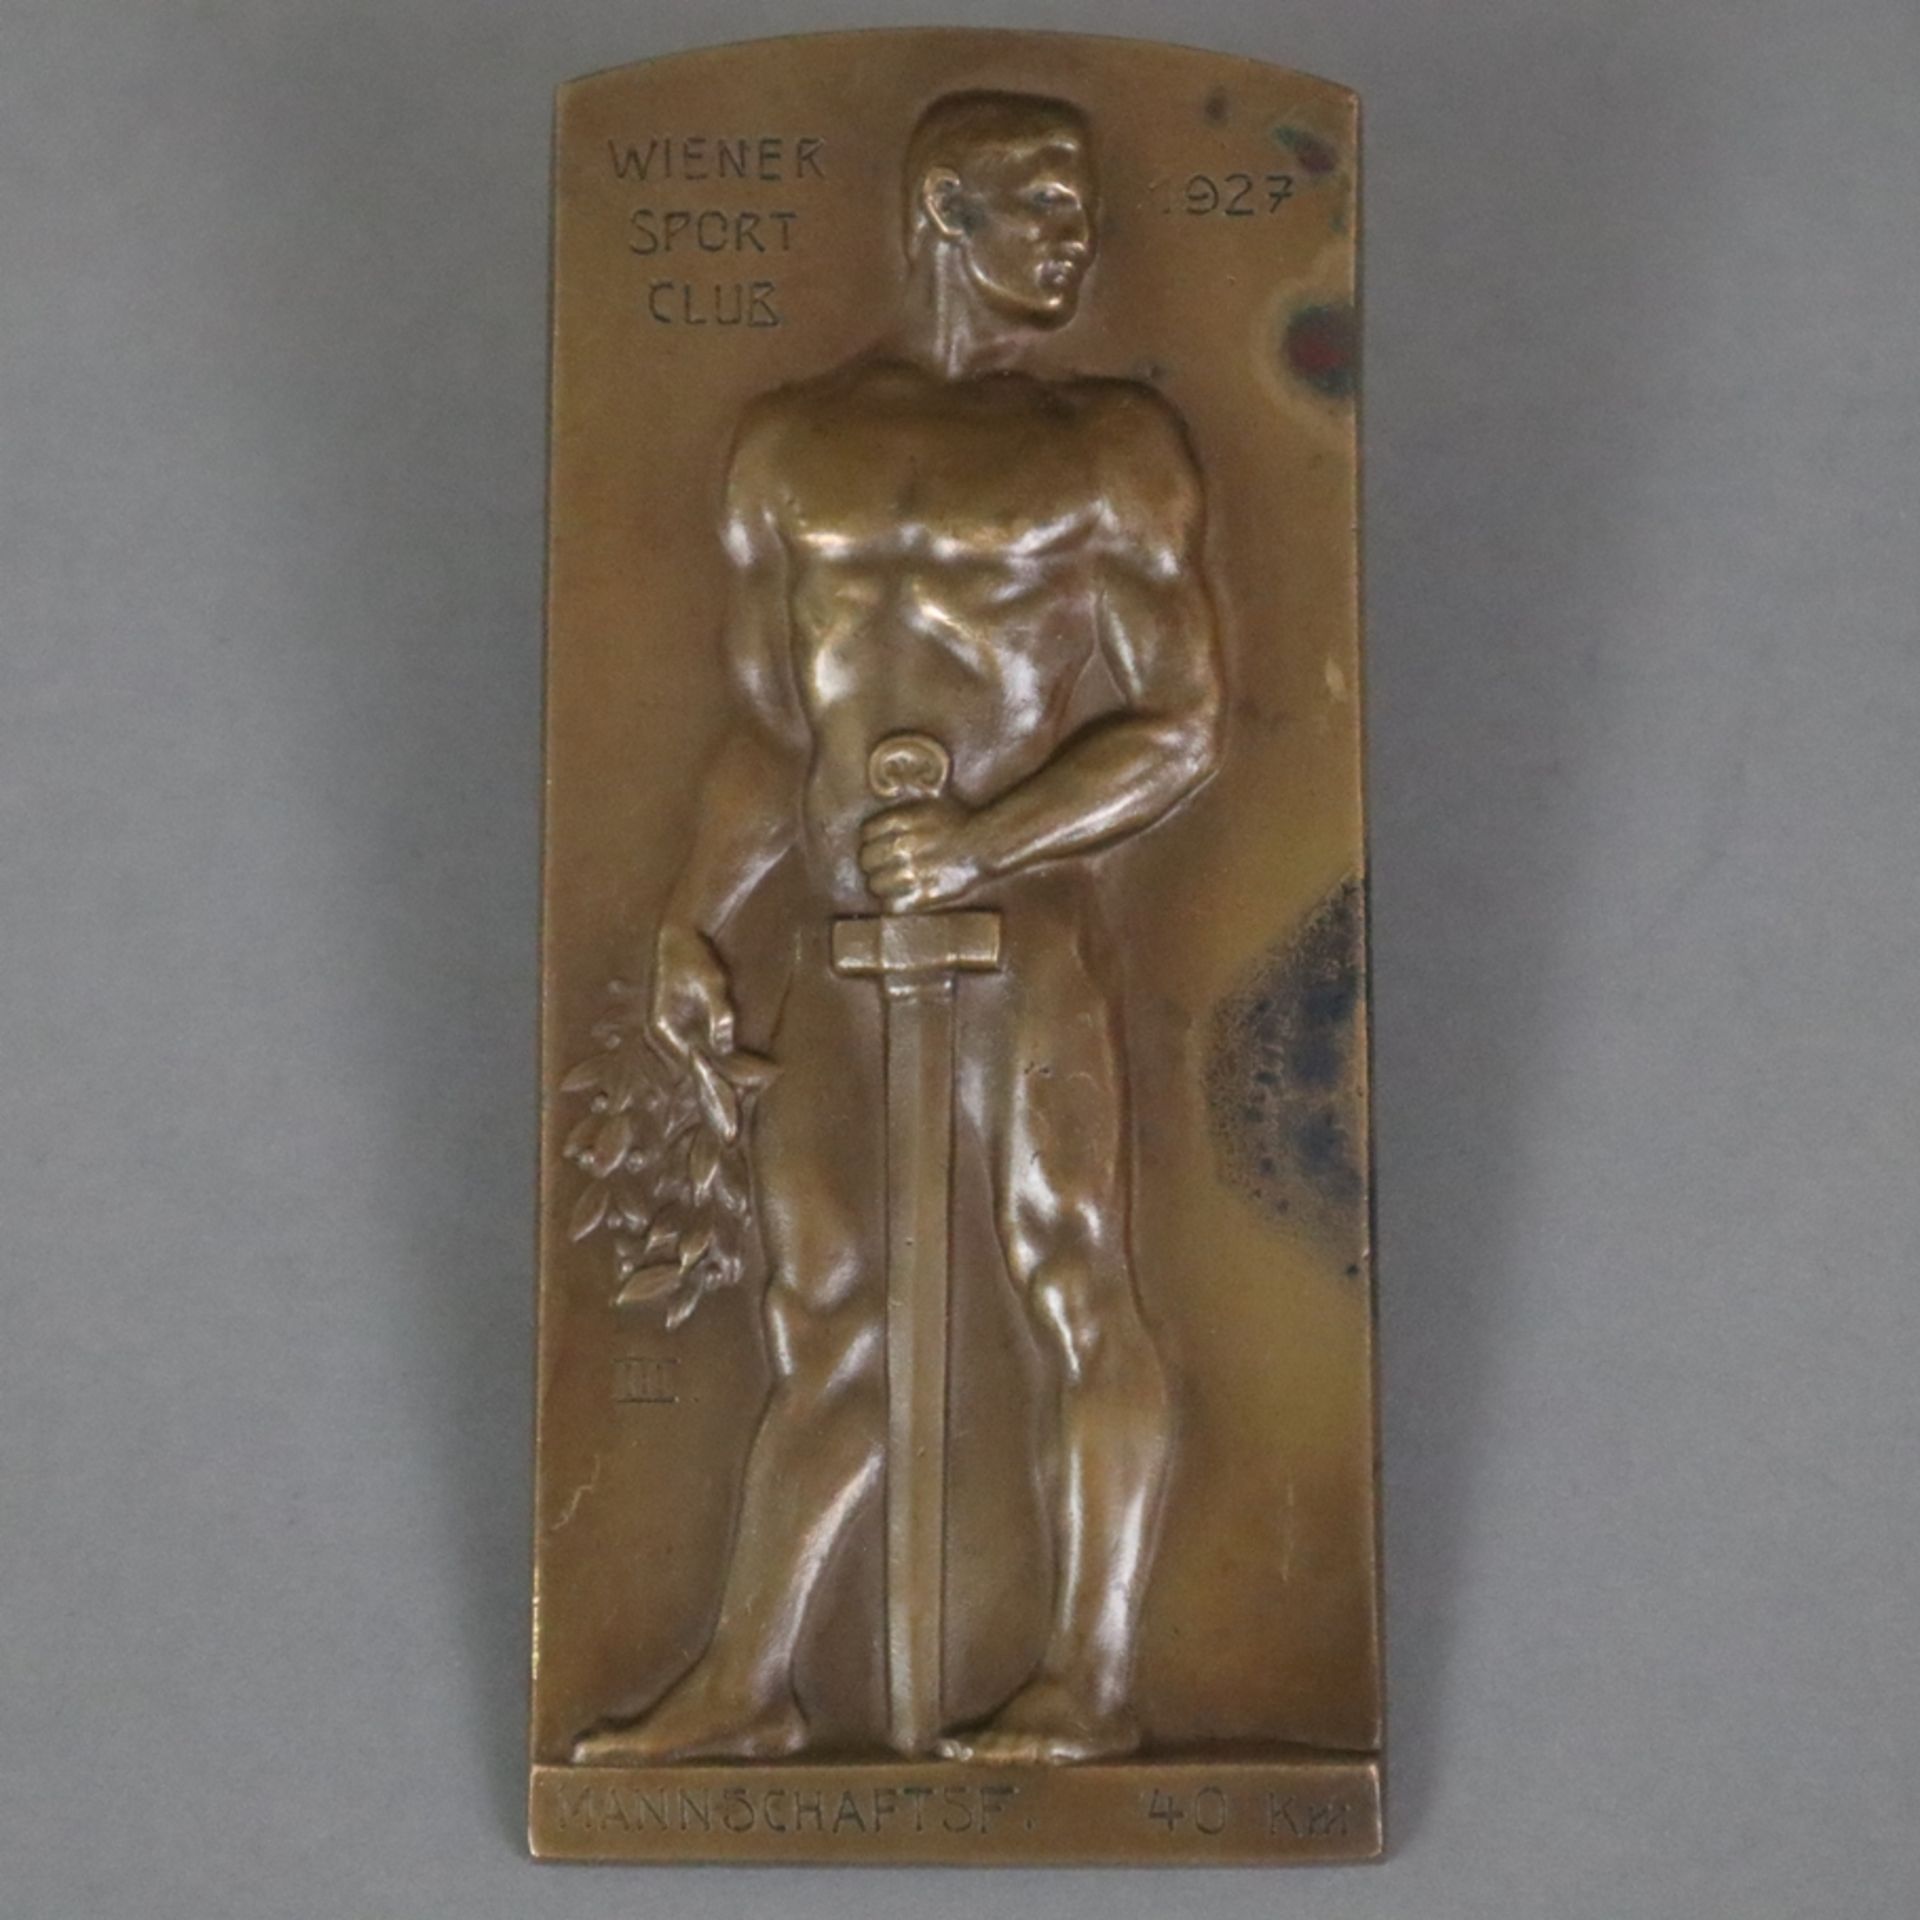 Bronzeplakette "Wiener Sport Club 1927" - hochrechteckige Form mit abgerundetem Abschluss, Reliefde